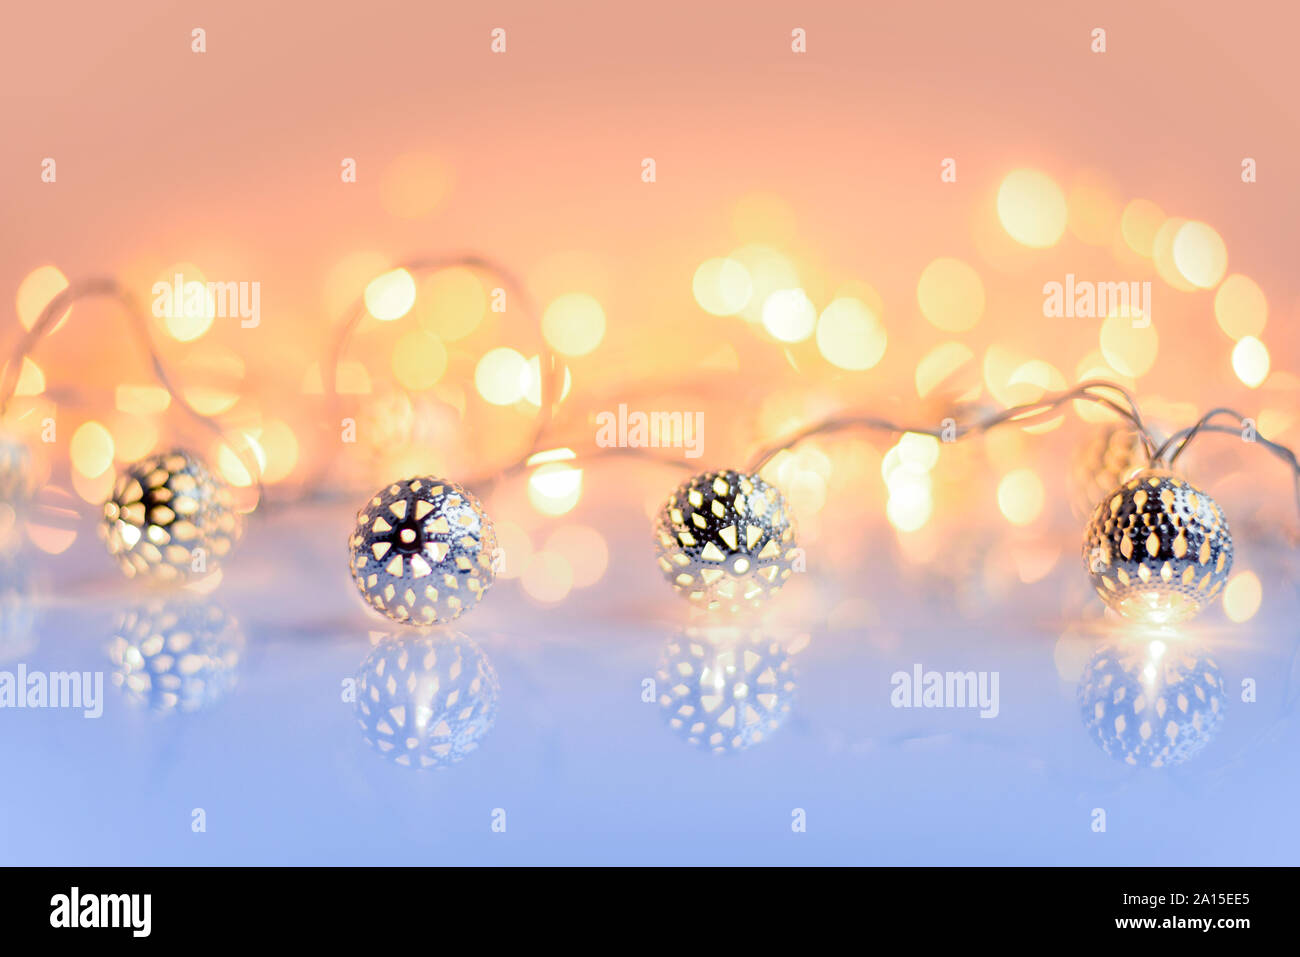 Weihnachtsbeleuchtung auf glänzenden Hintergrund. Weihnachten festliche Hintergrund Stockfoto